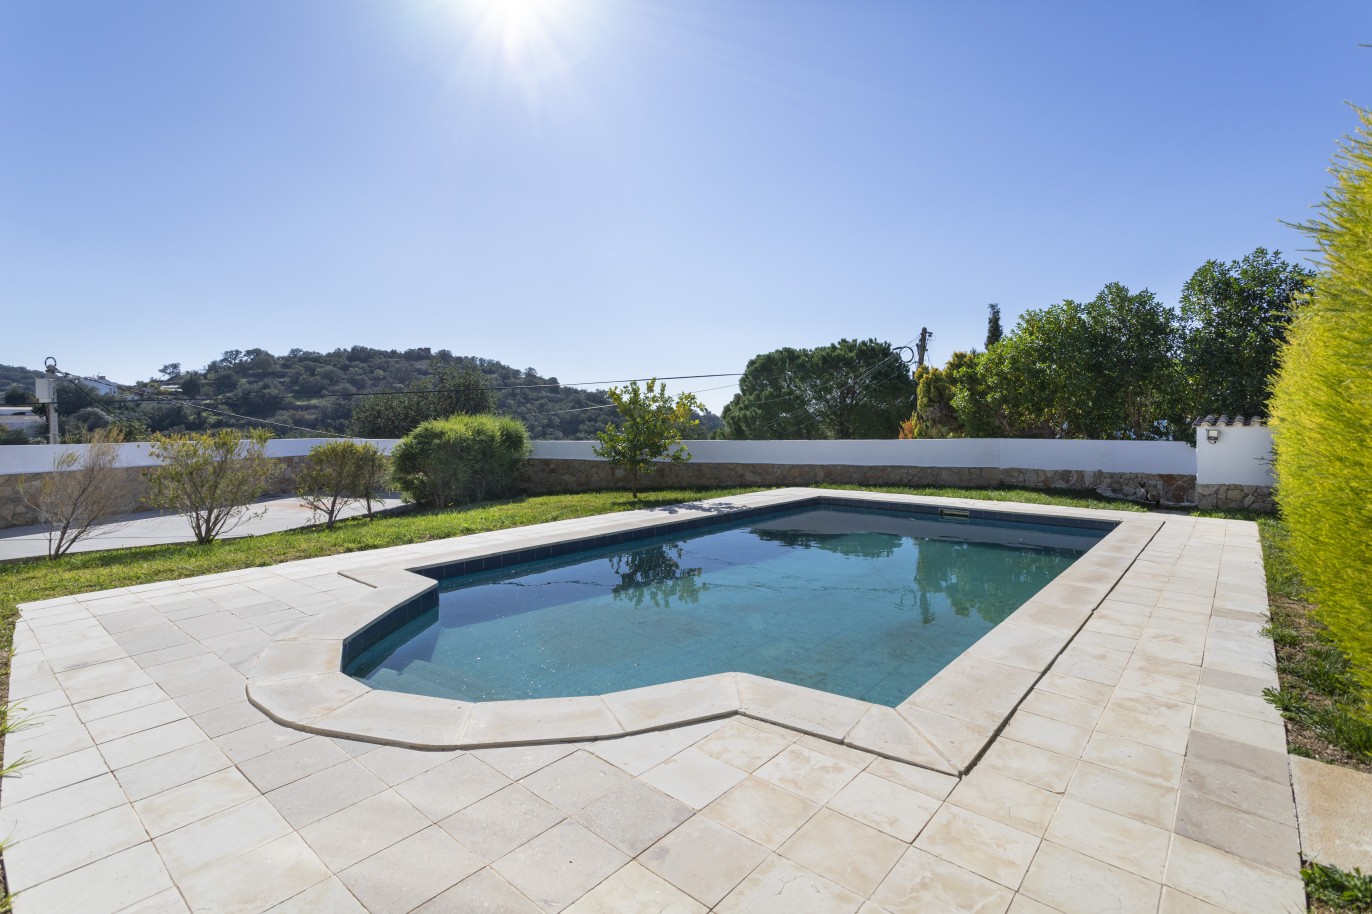 Nova moradia V4 geminada com piscina, para venda em Loulé, Algarve_246576